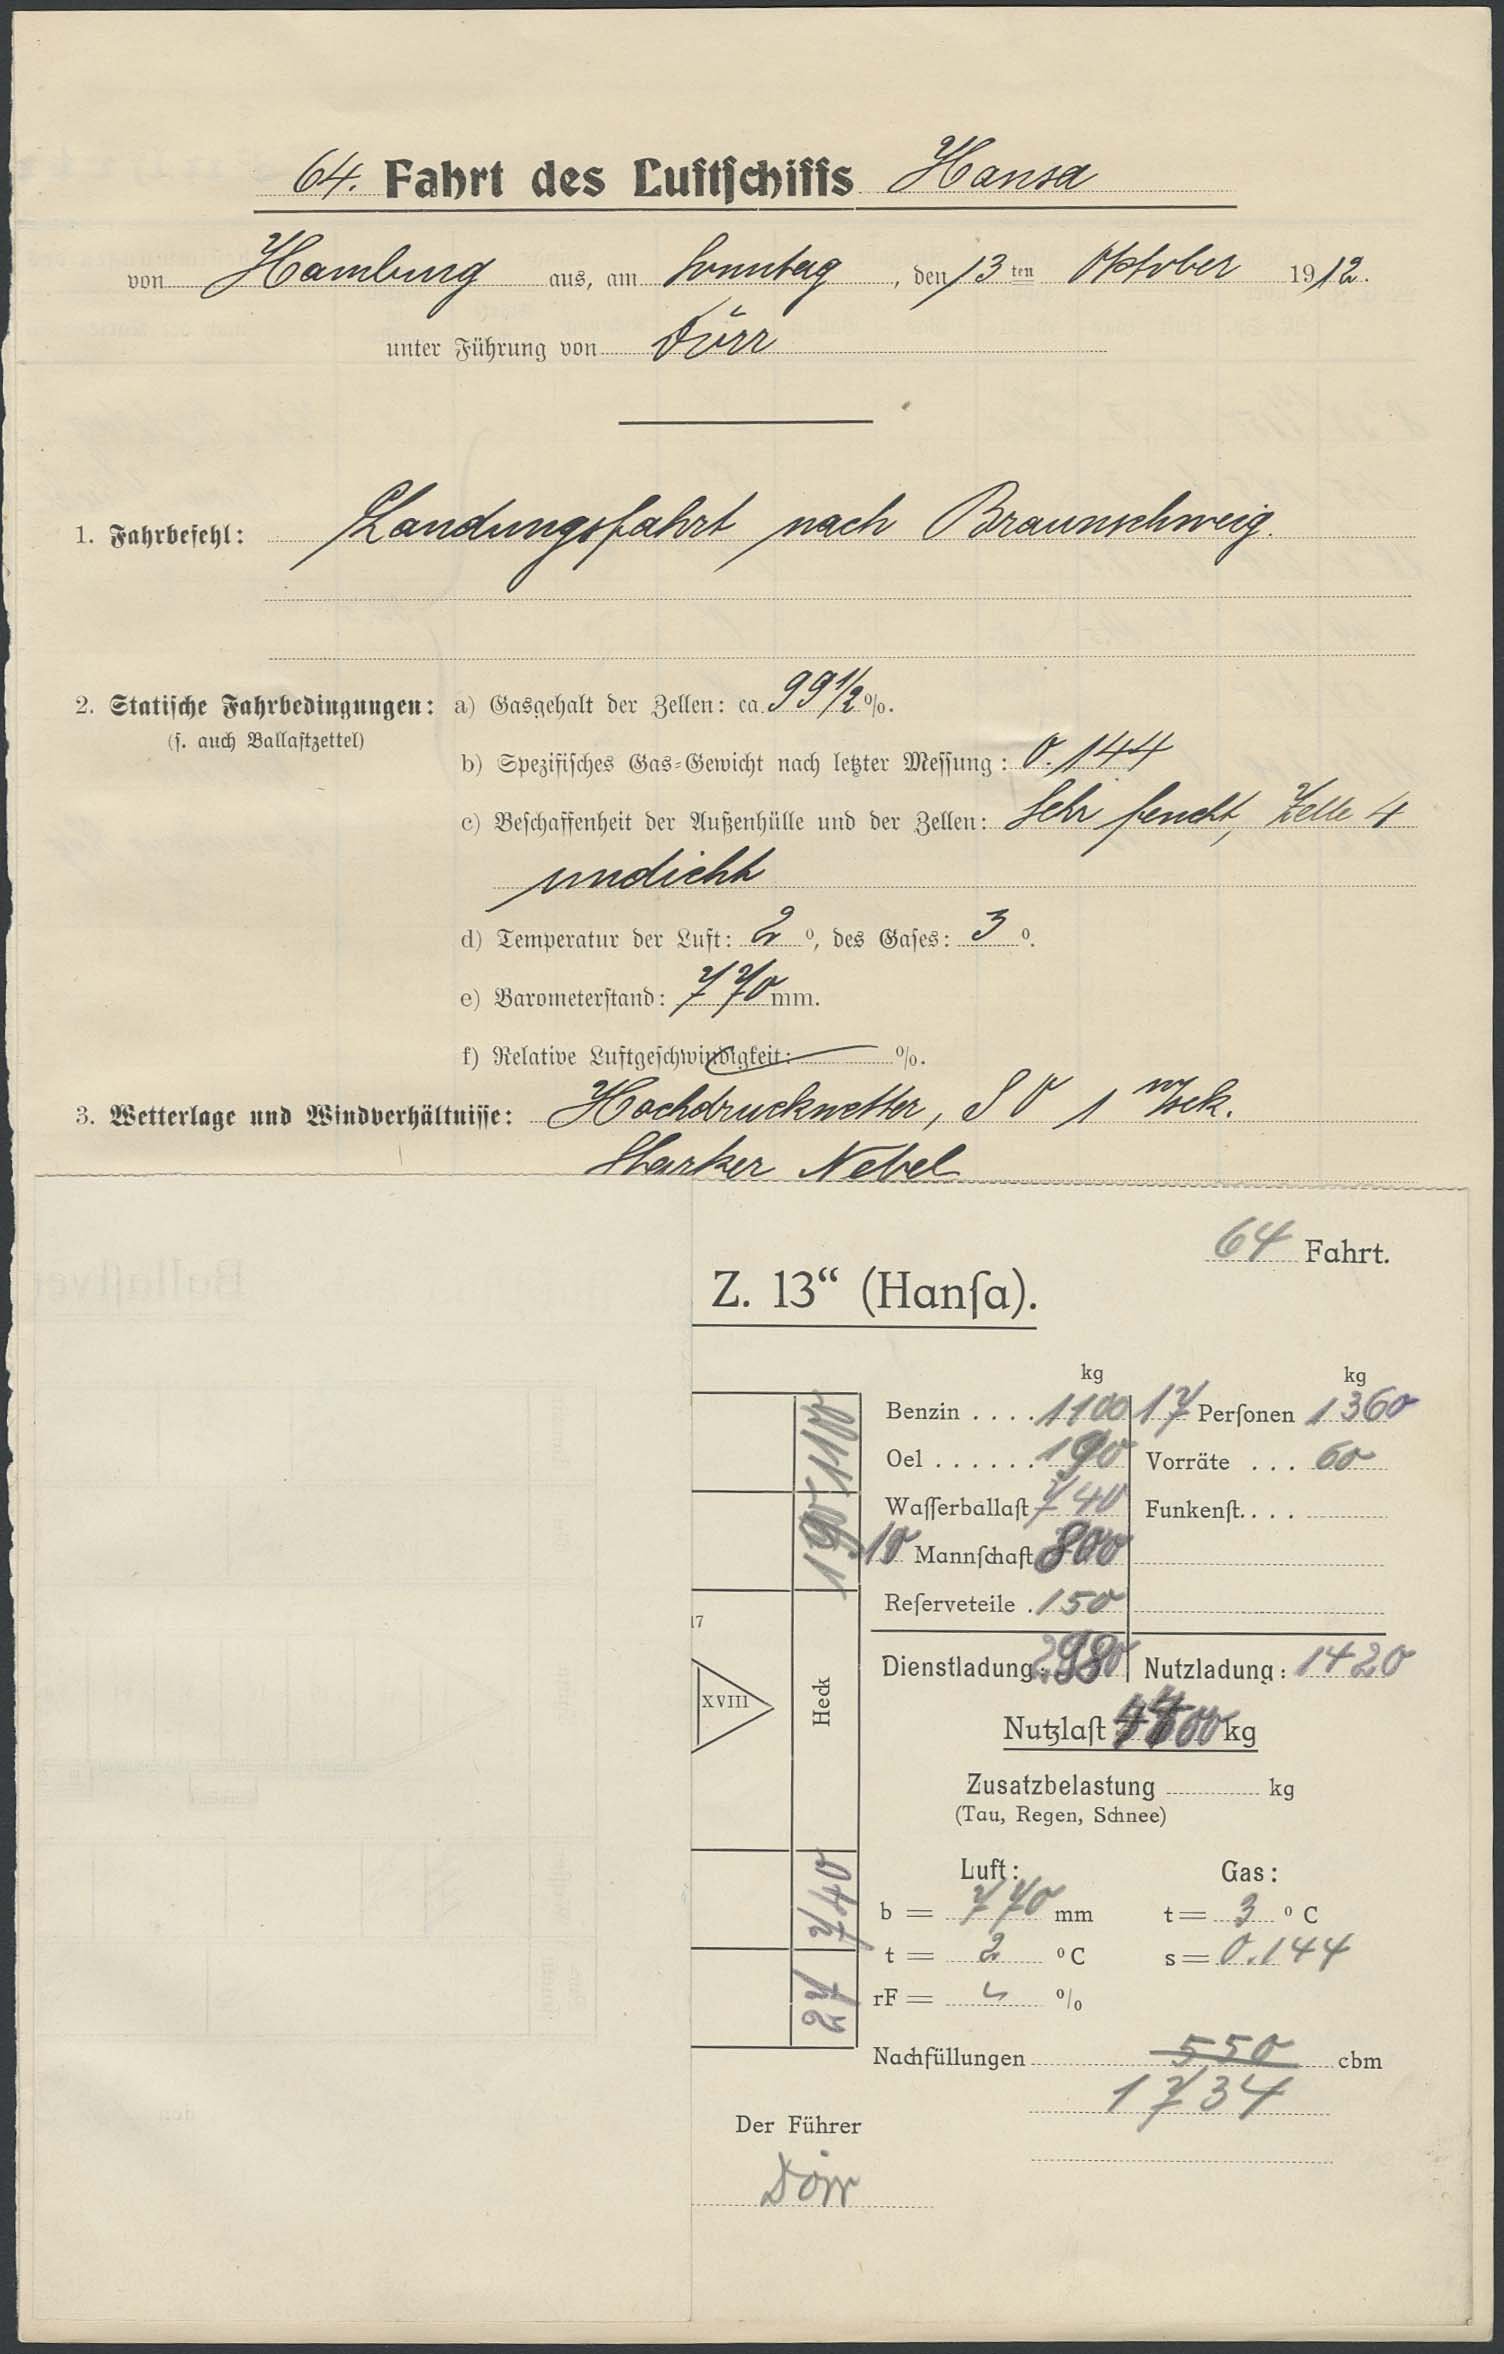 Fahrtbericht der 64. Fahrt des LZ 13 – HANSA von Hamburg - Braunschweig vom 13.10.1912 (Luftfahrt.Industrie.Westfalen CC BY-NC-SA)